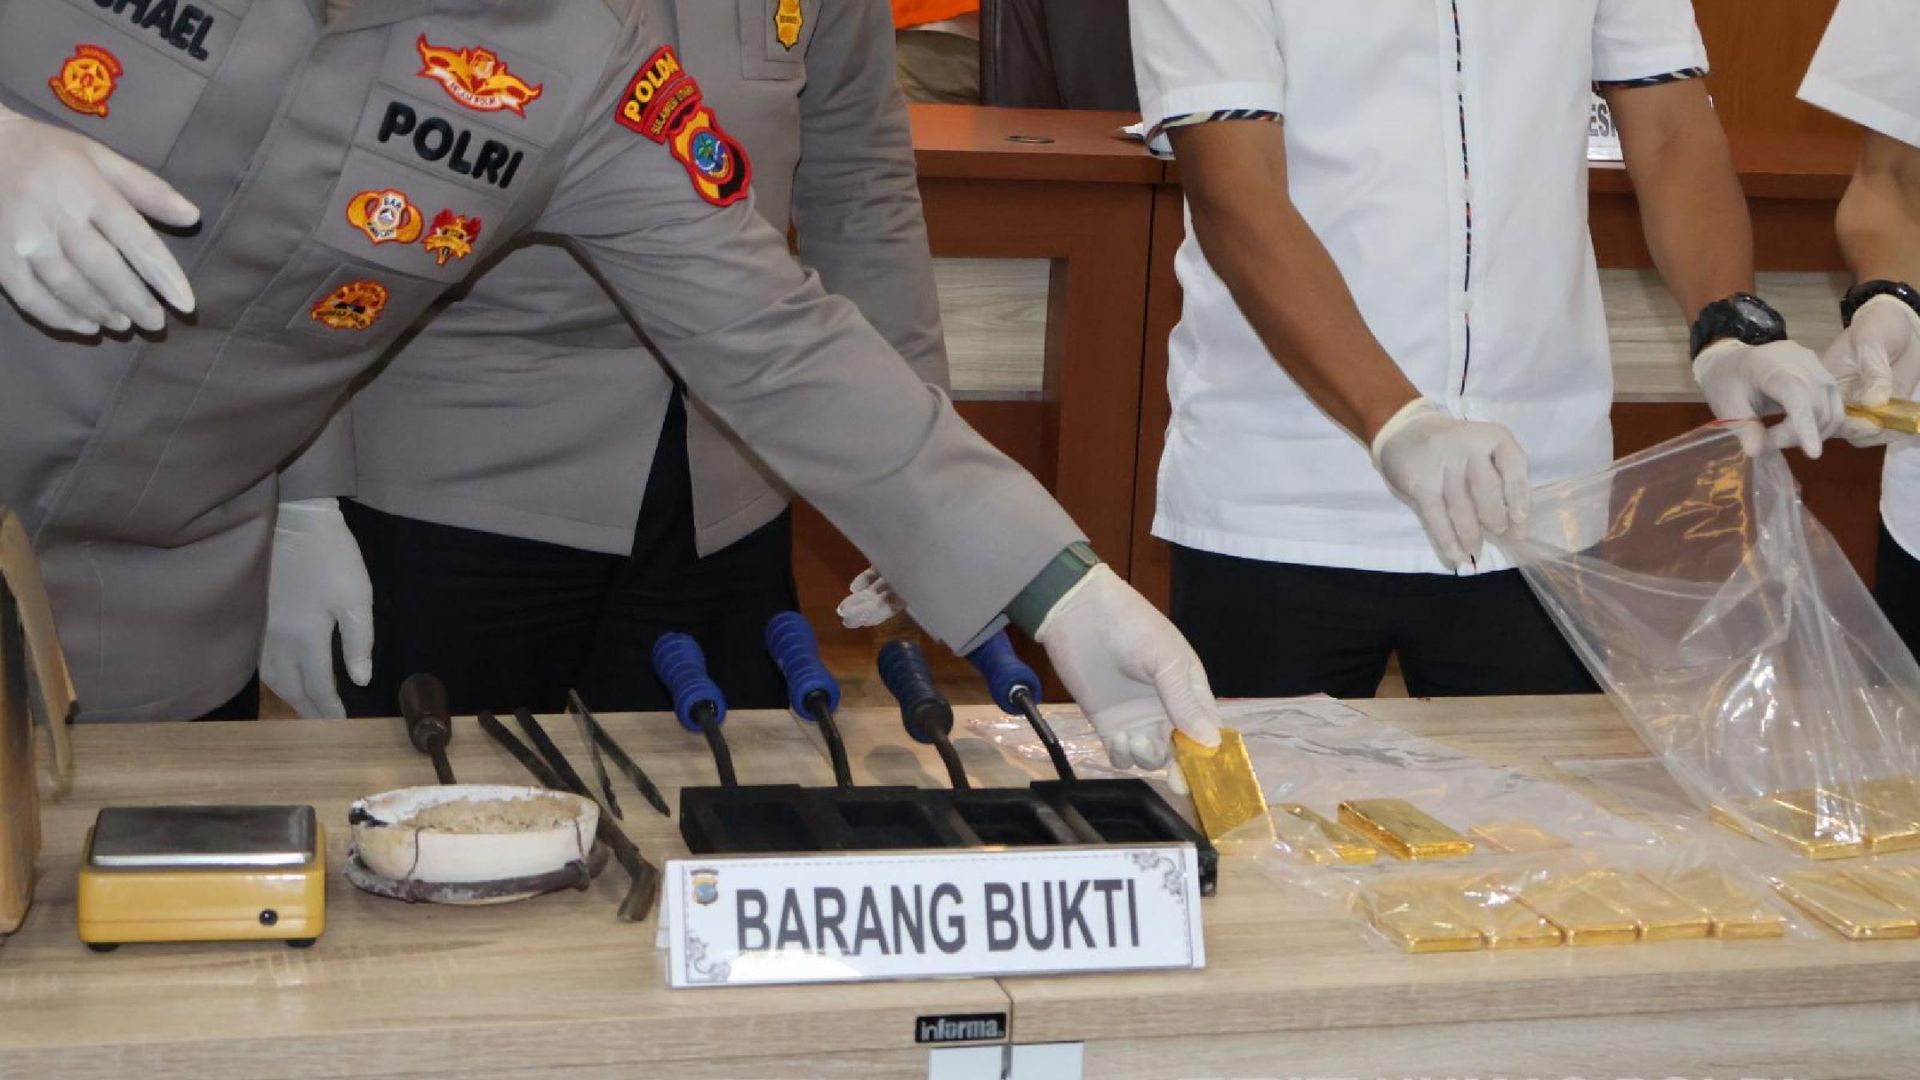 Polda Sulut mengungkap kasus penyelundupan emas ilegal di Bandara Sam Ratulangi. 10 kg emas sitaan diduga berasal dari PETI di Sulut dan akan dijual ke Surabaya.